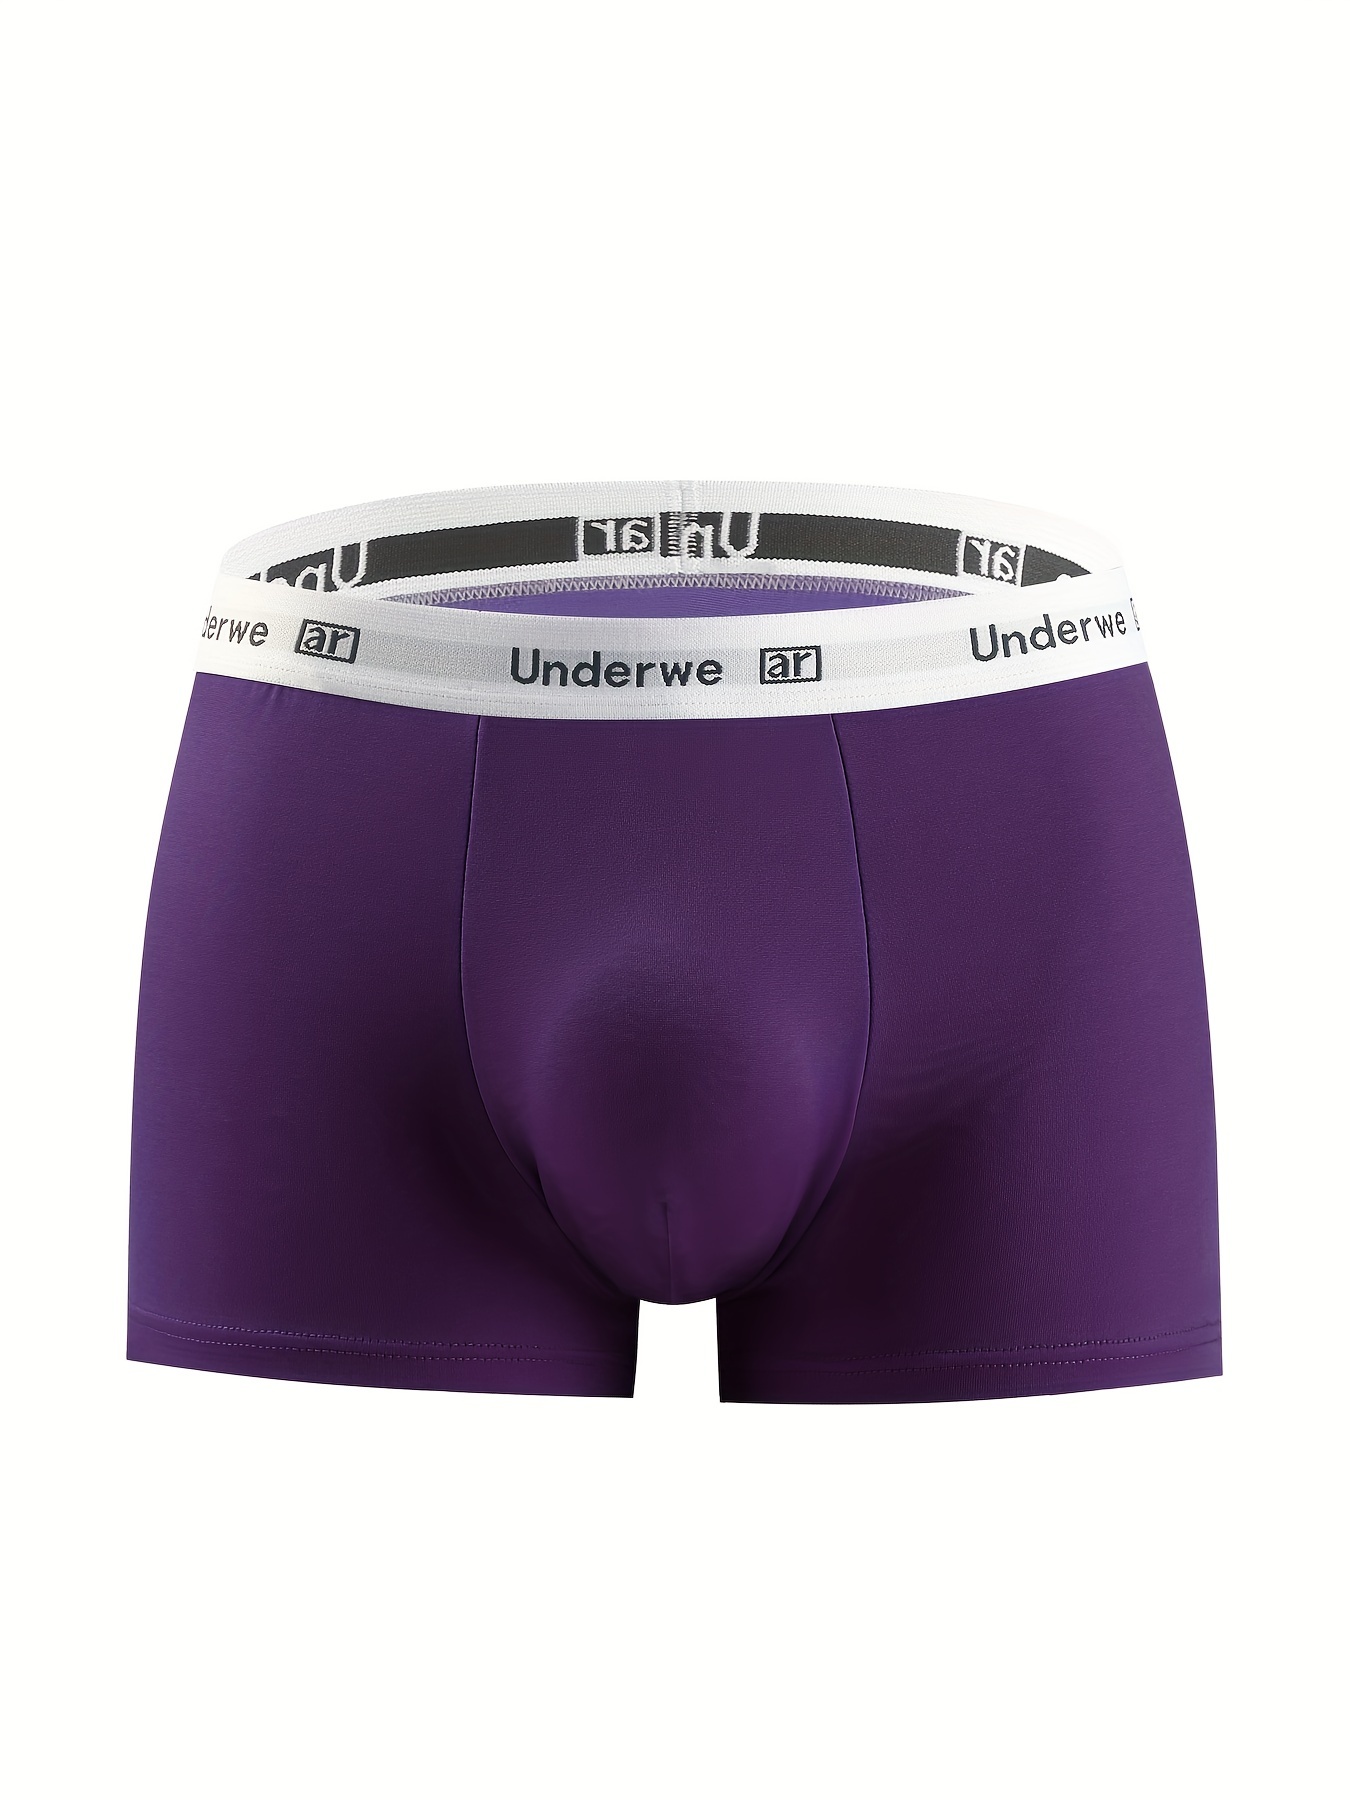 Underwear Expert Well Hung Meundies Boxer Brief Men's Best ENDOWED Underwear  Cushion Comfort Purple Padded removable Sport Indigo Lavender -  Norway